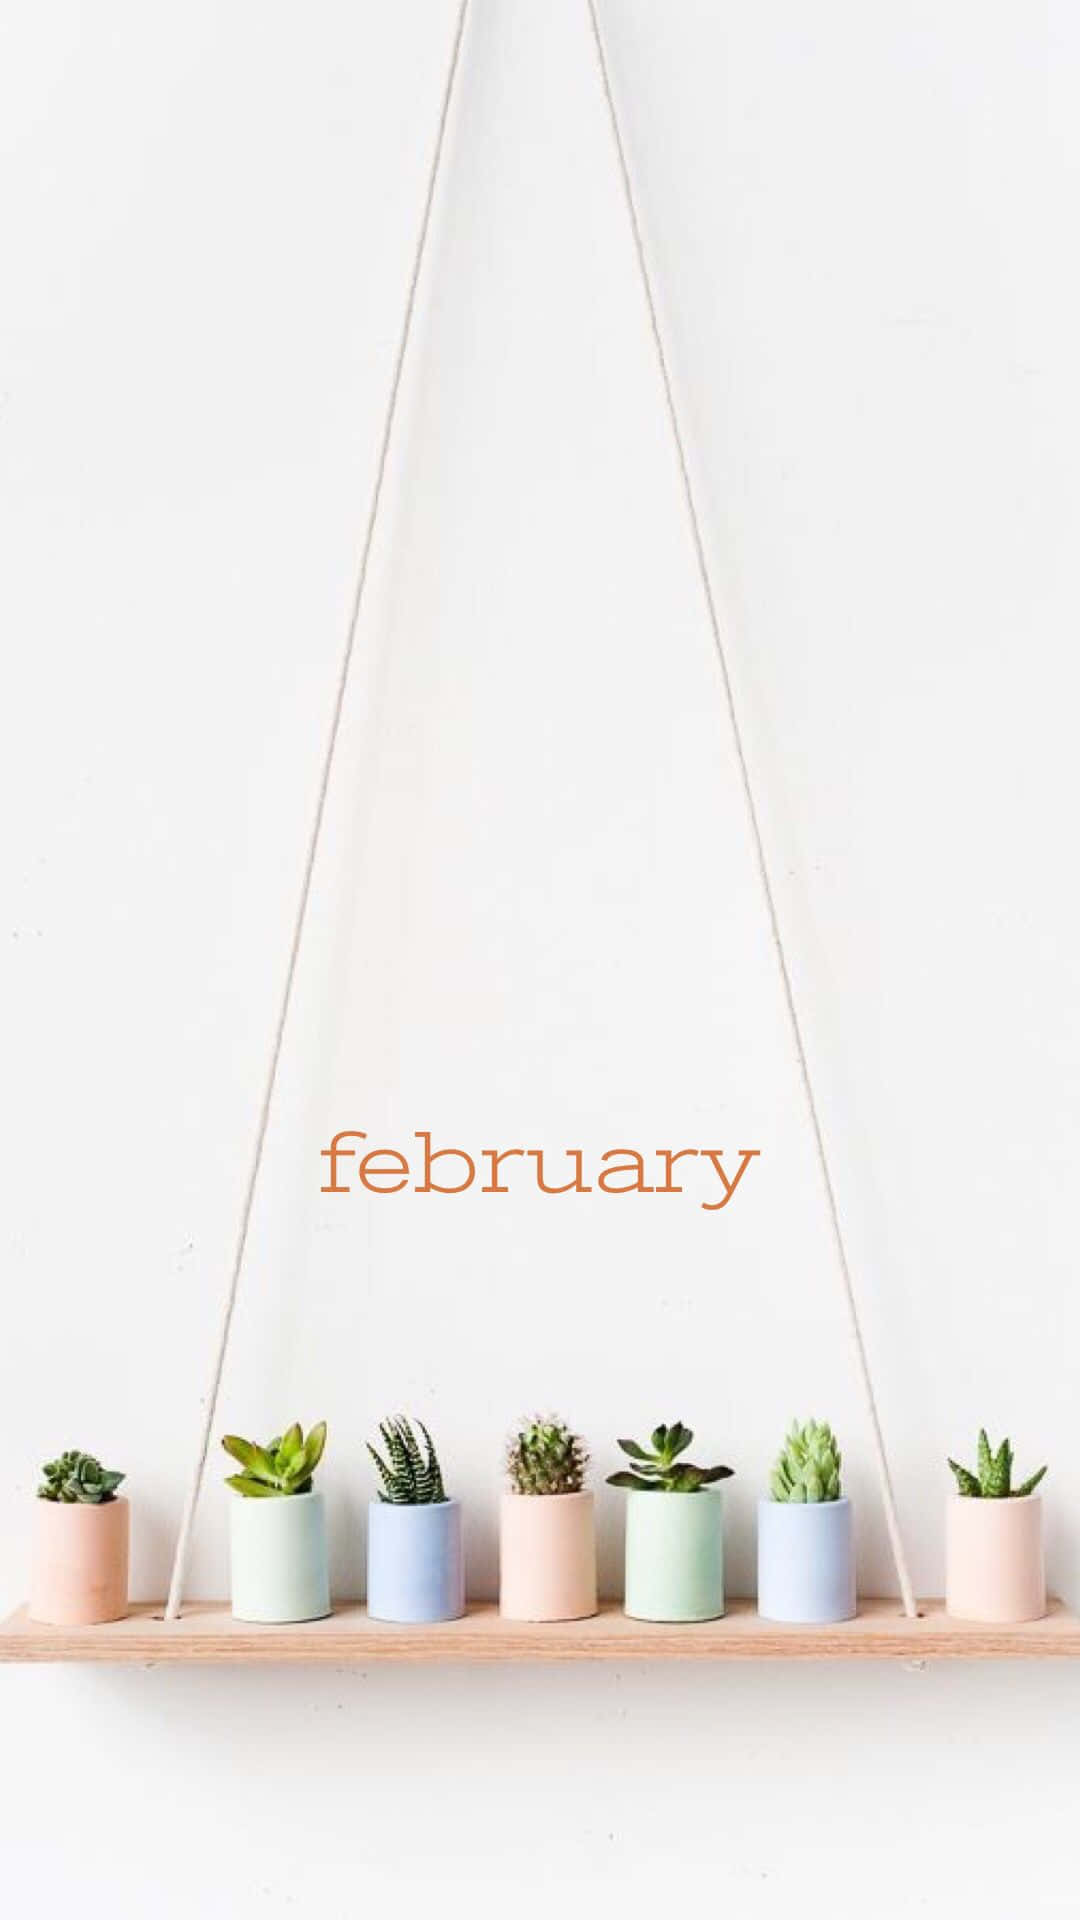 February iPhone Calendar Wallpaper Wallpaper